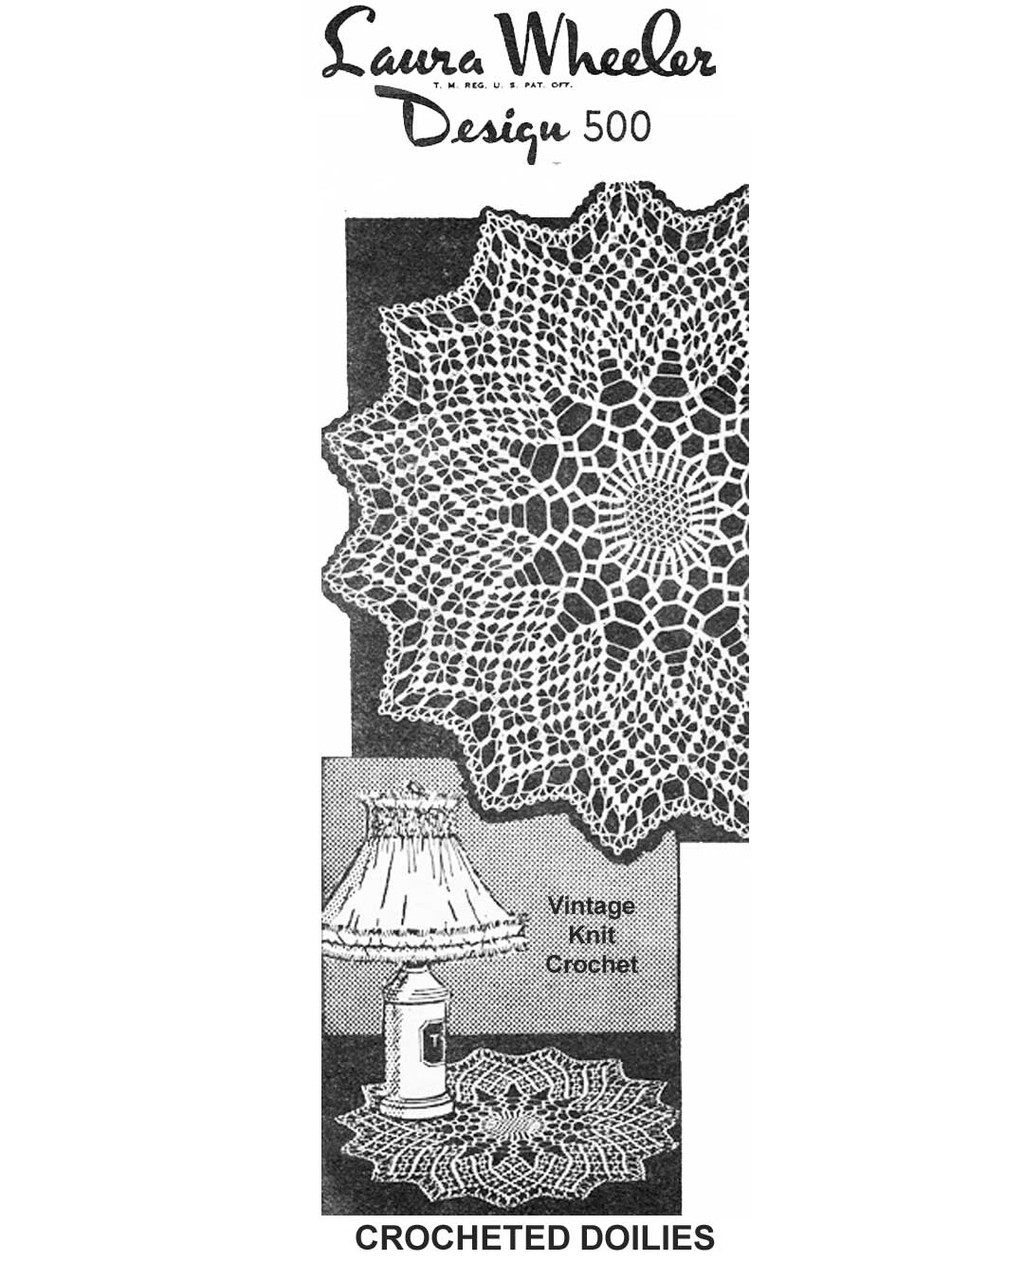 Vintage Crochet Spiderweb Doilies Pattern Design 500